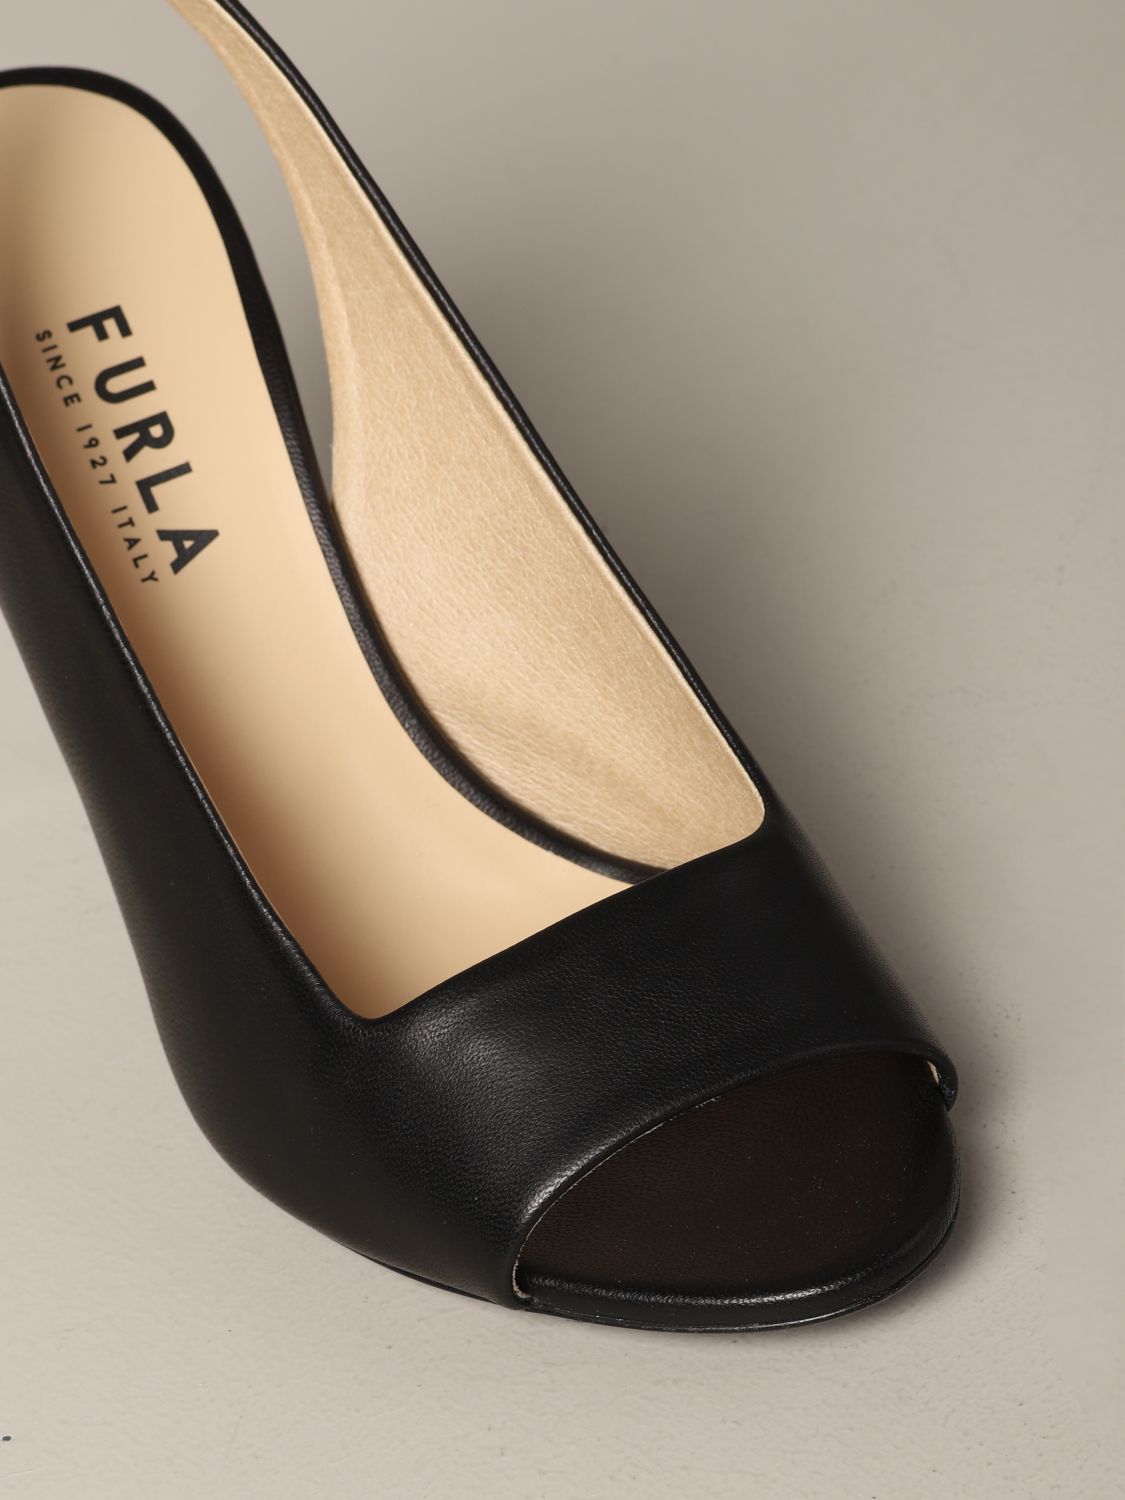 高跟鞋 Furla: Furla Yc74 纳帕革高跟鞋 黑色 4